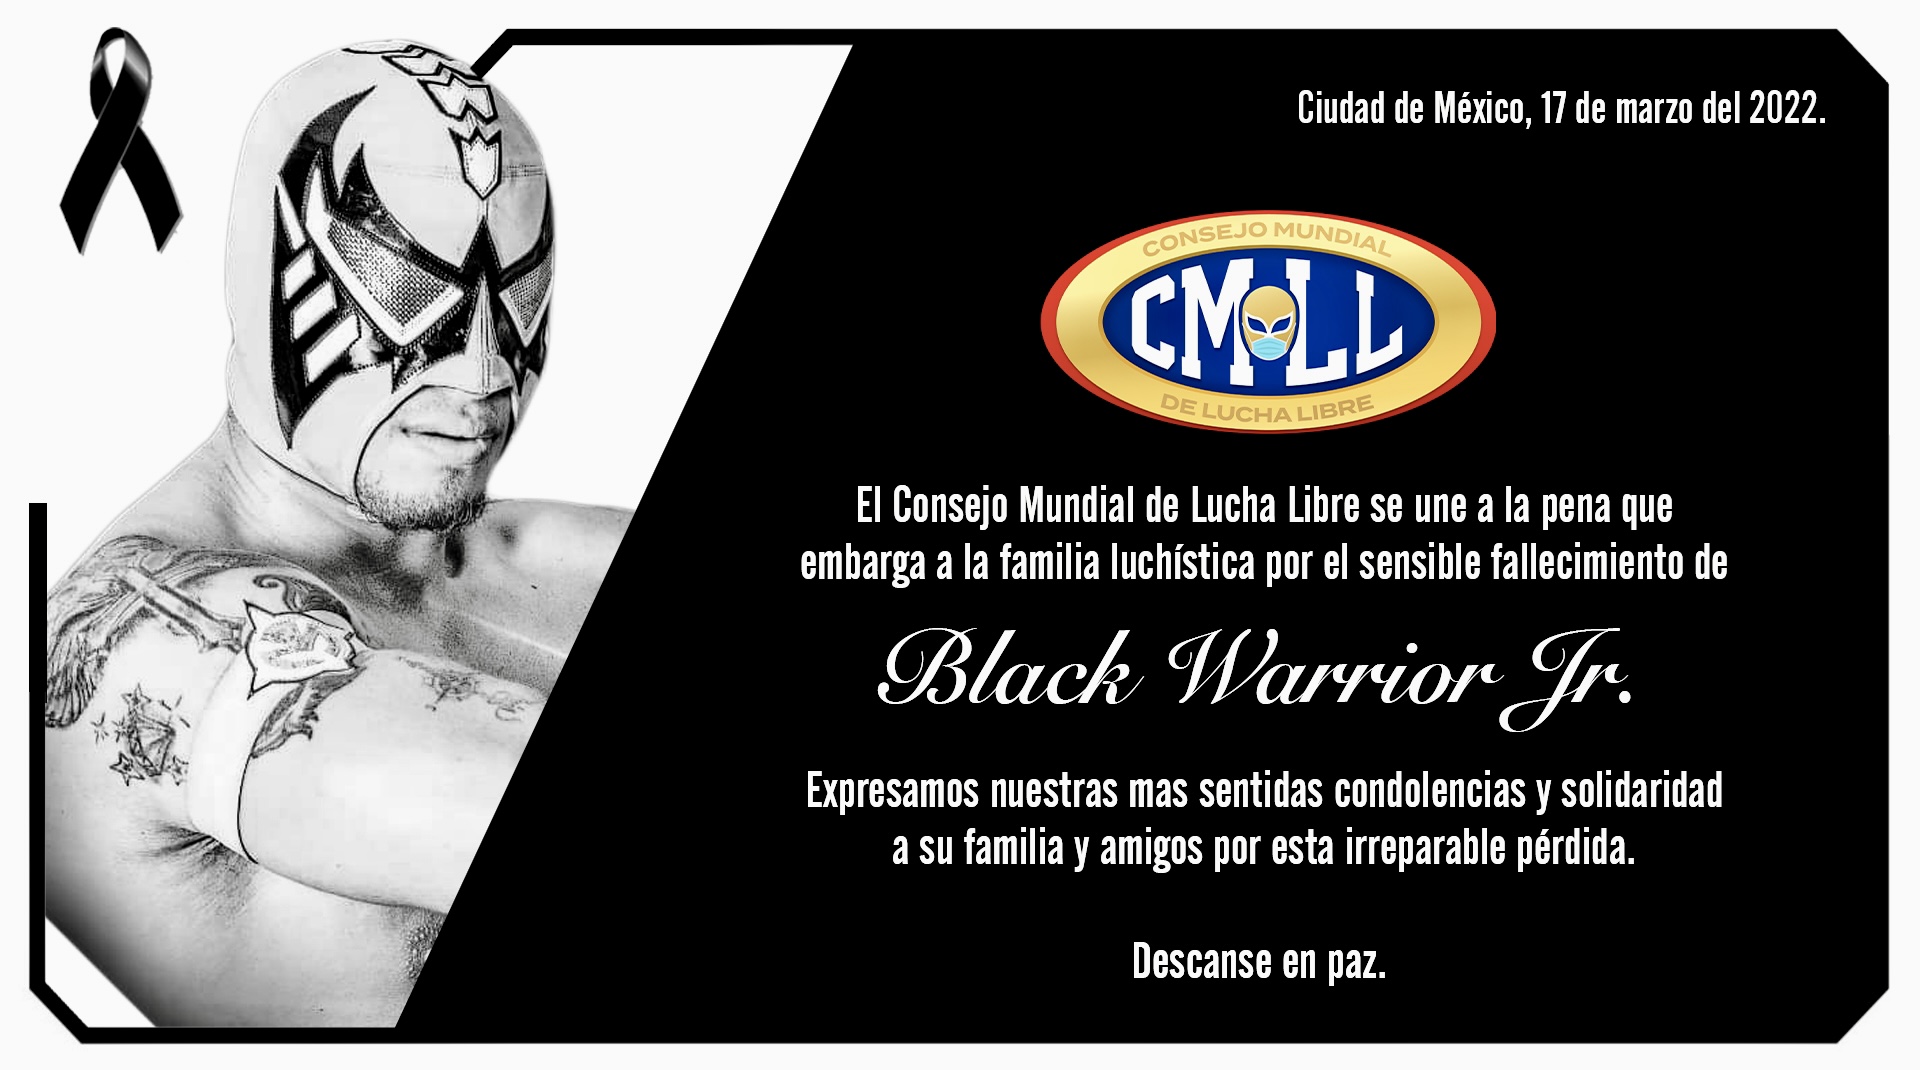 Murió Black Warrior Jr. a los 24 años, el famoso luchador yerno del “Negro”  Casas - Infobae